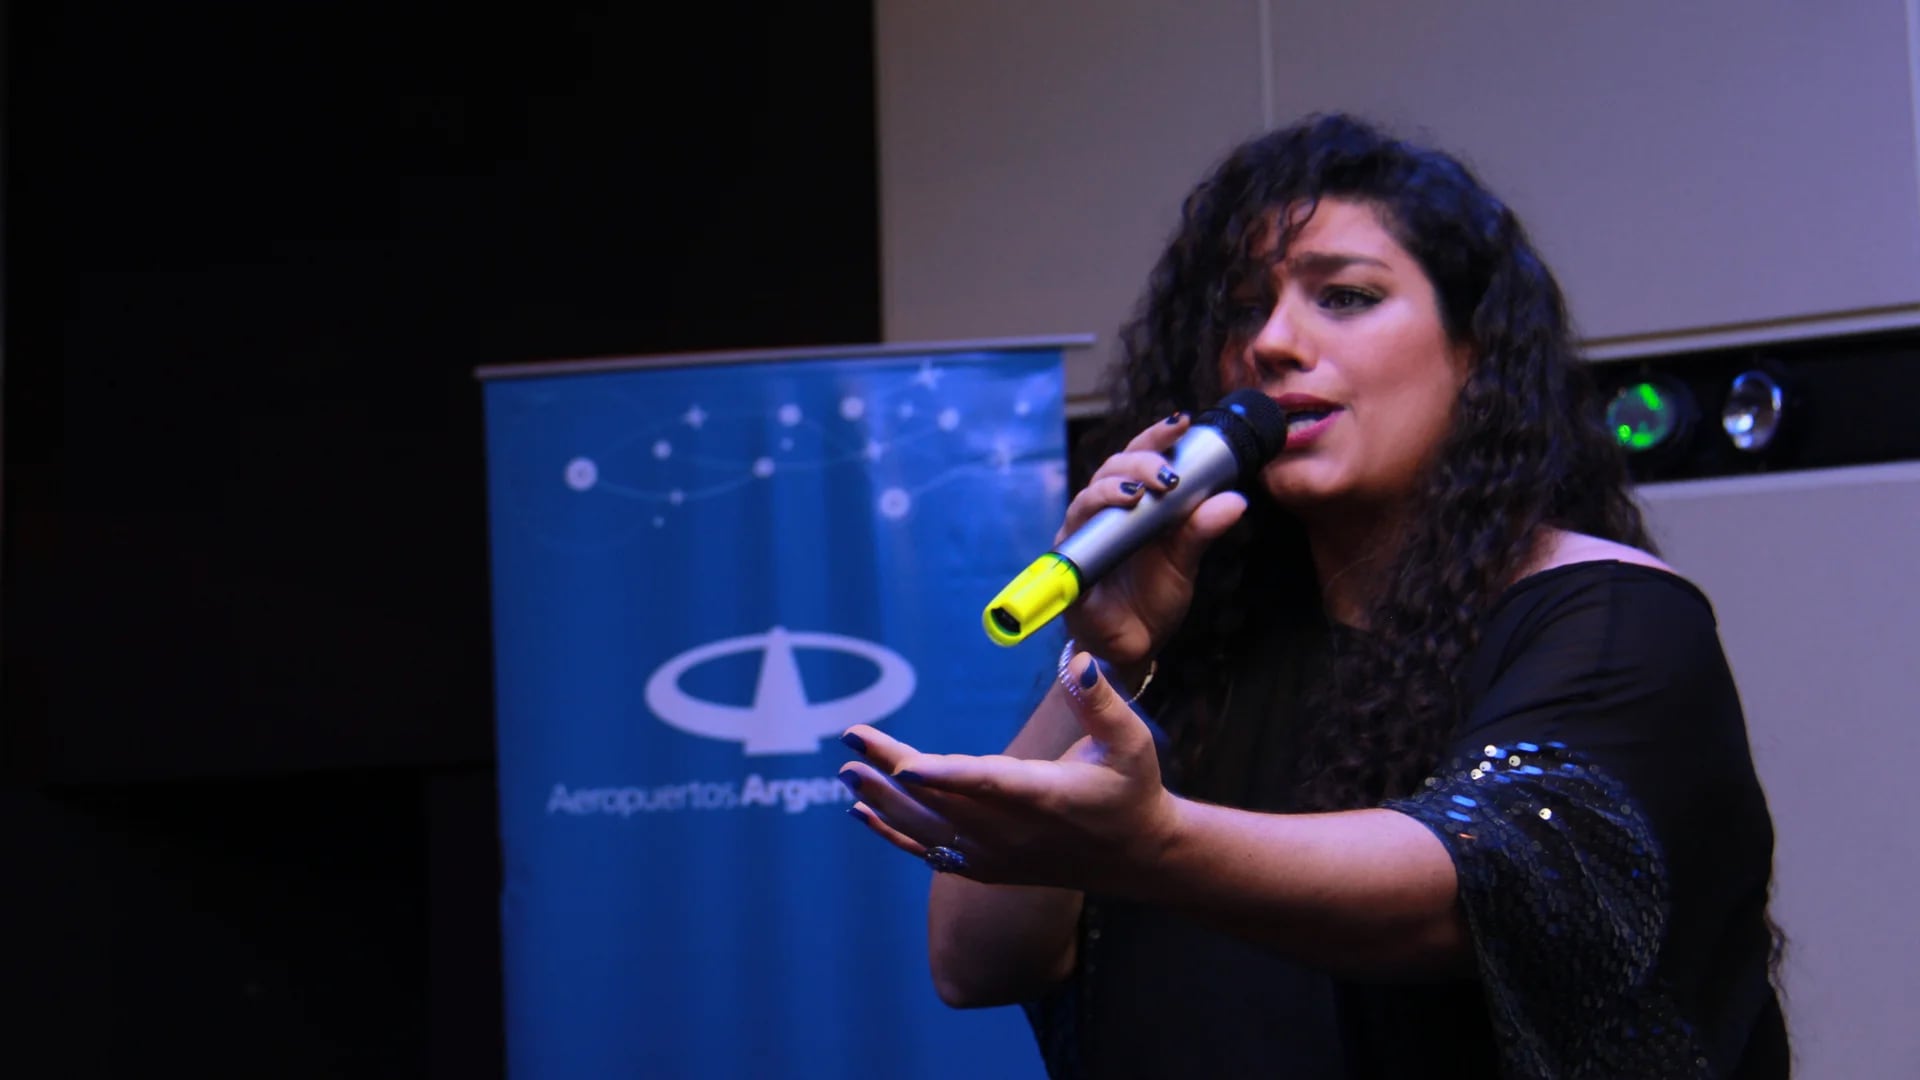 La cantante Valeria Cherekian cerró el primer día del congreso con canciones típicas armenias y argentinas. Culminó el show con “El día que me quieras” traducida al armenio (Francesco Garabello)